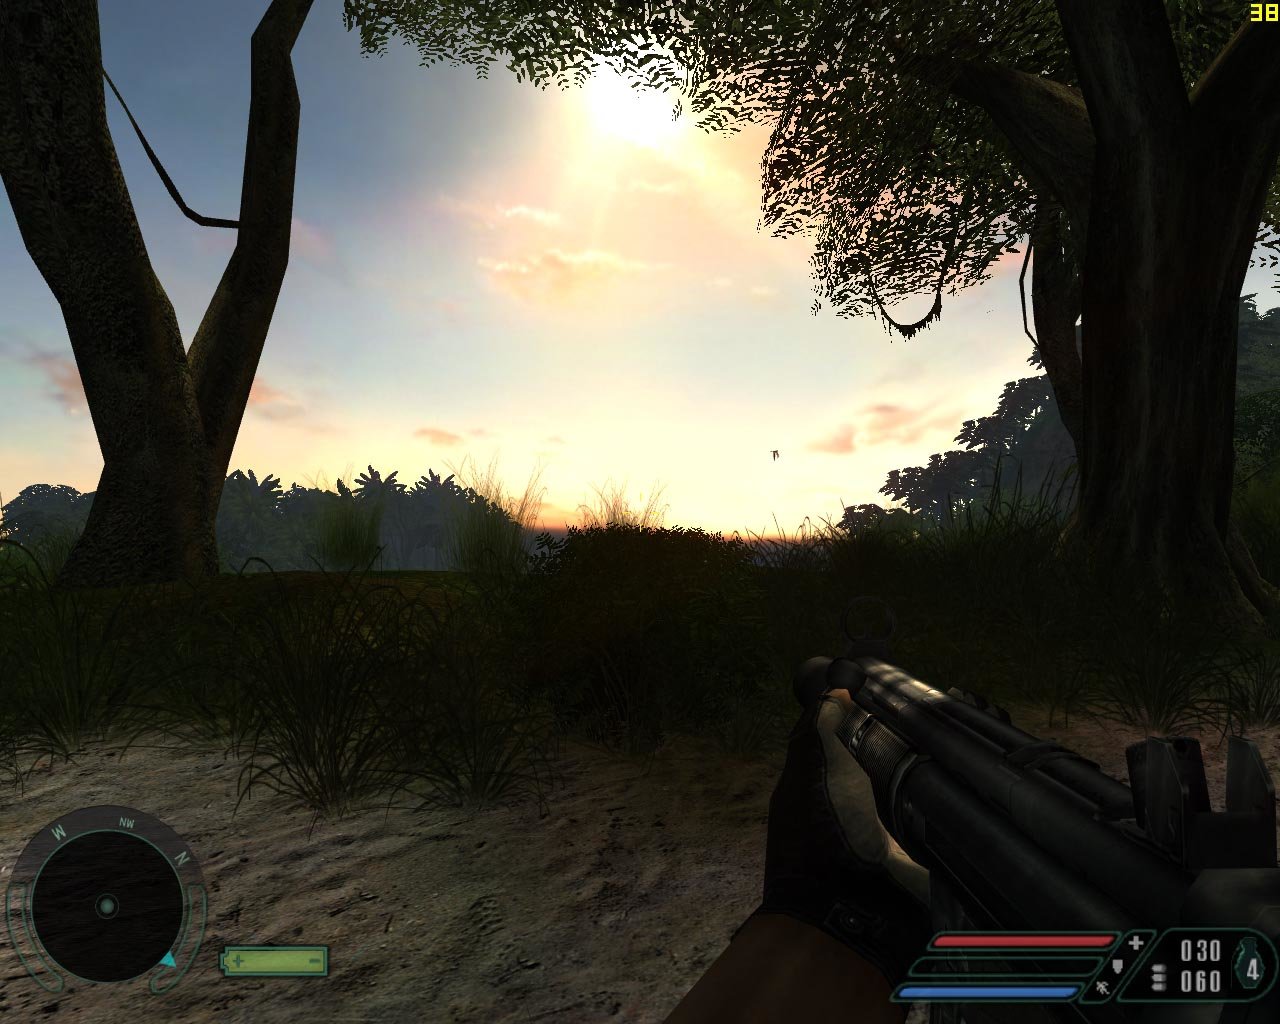 Far Cry Version 1.4 @ 1280x1024/4xAA/8xHQAF HDR-Mode 7